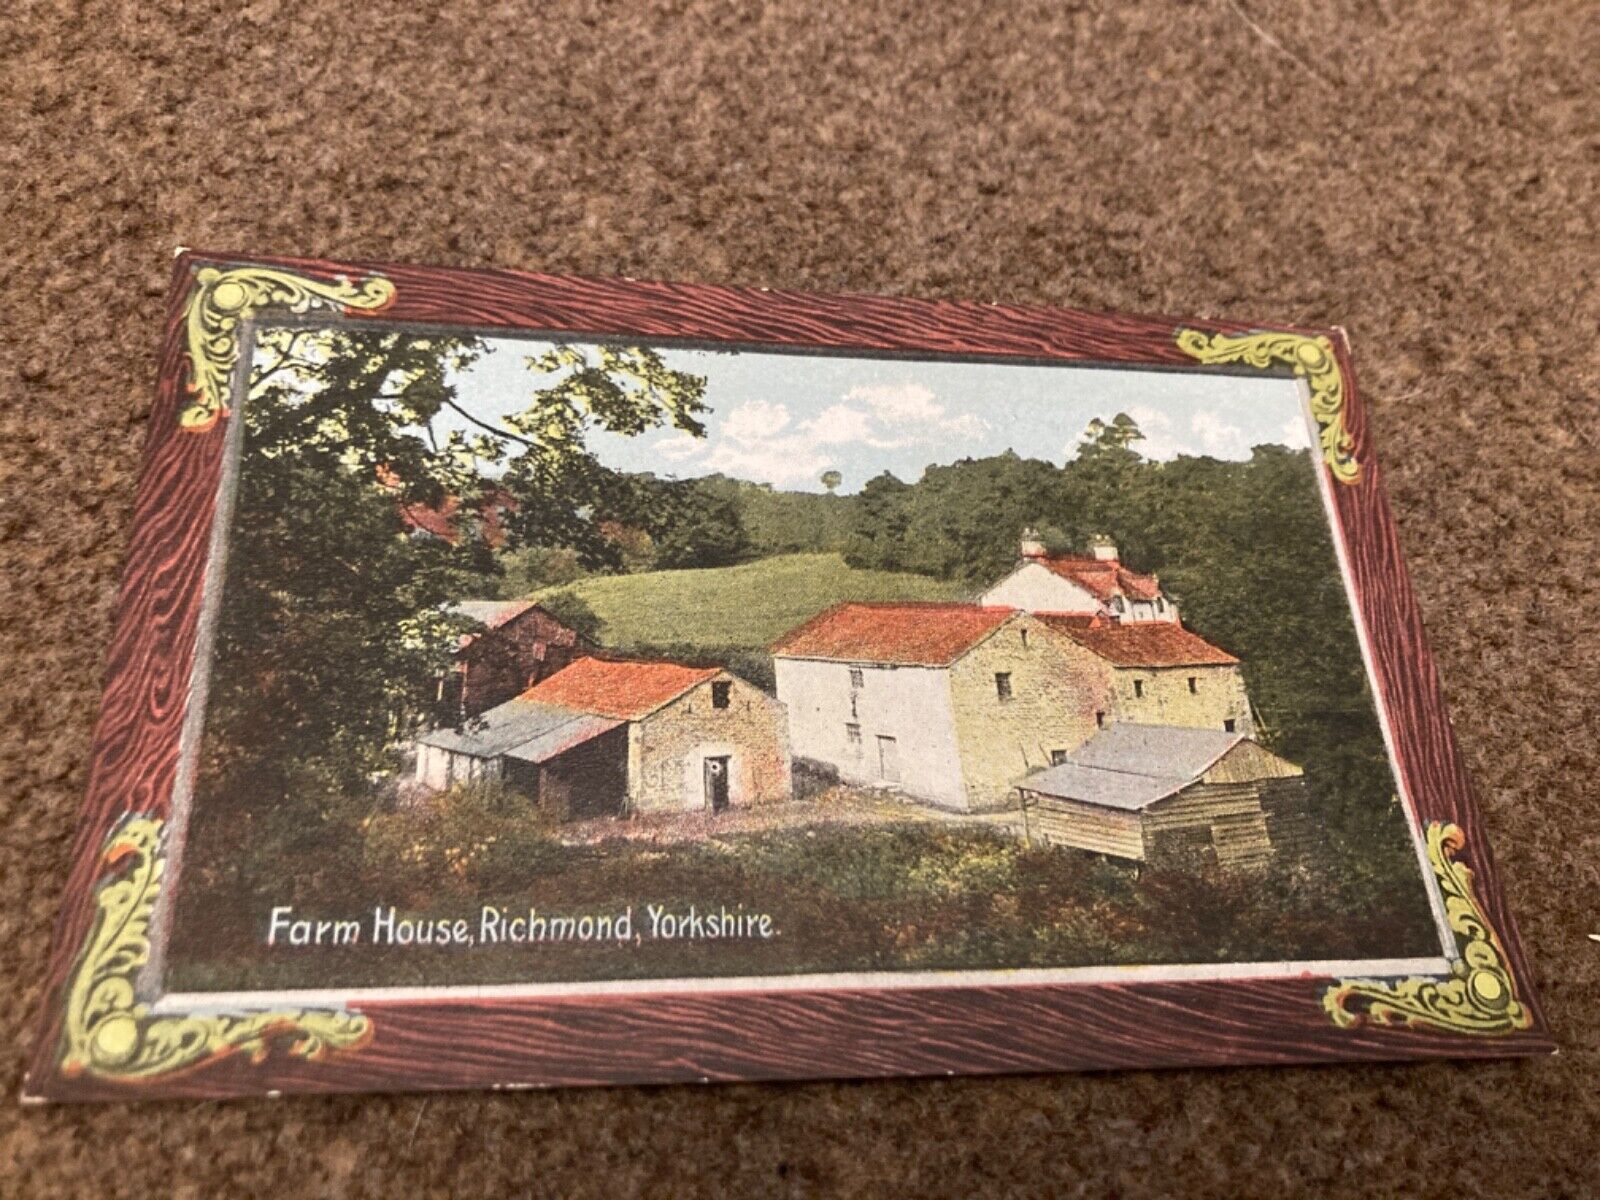 House Clearance - Vintage Service of Farm House, Richmond, Yorkshire, near Darlington